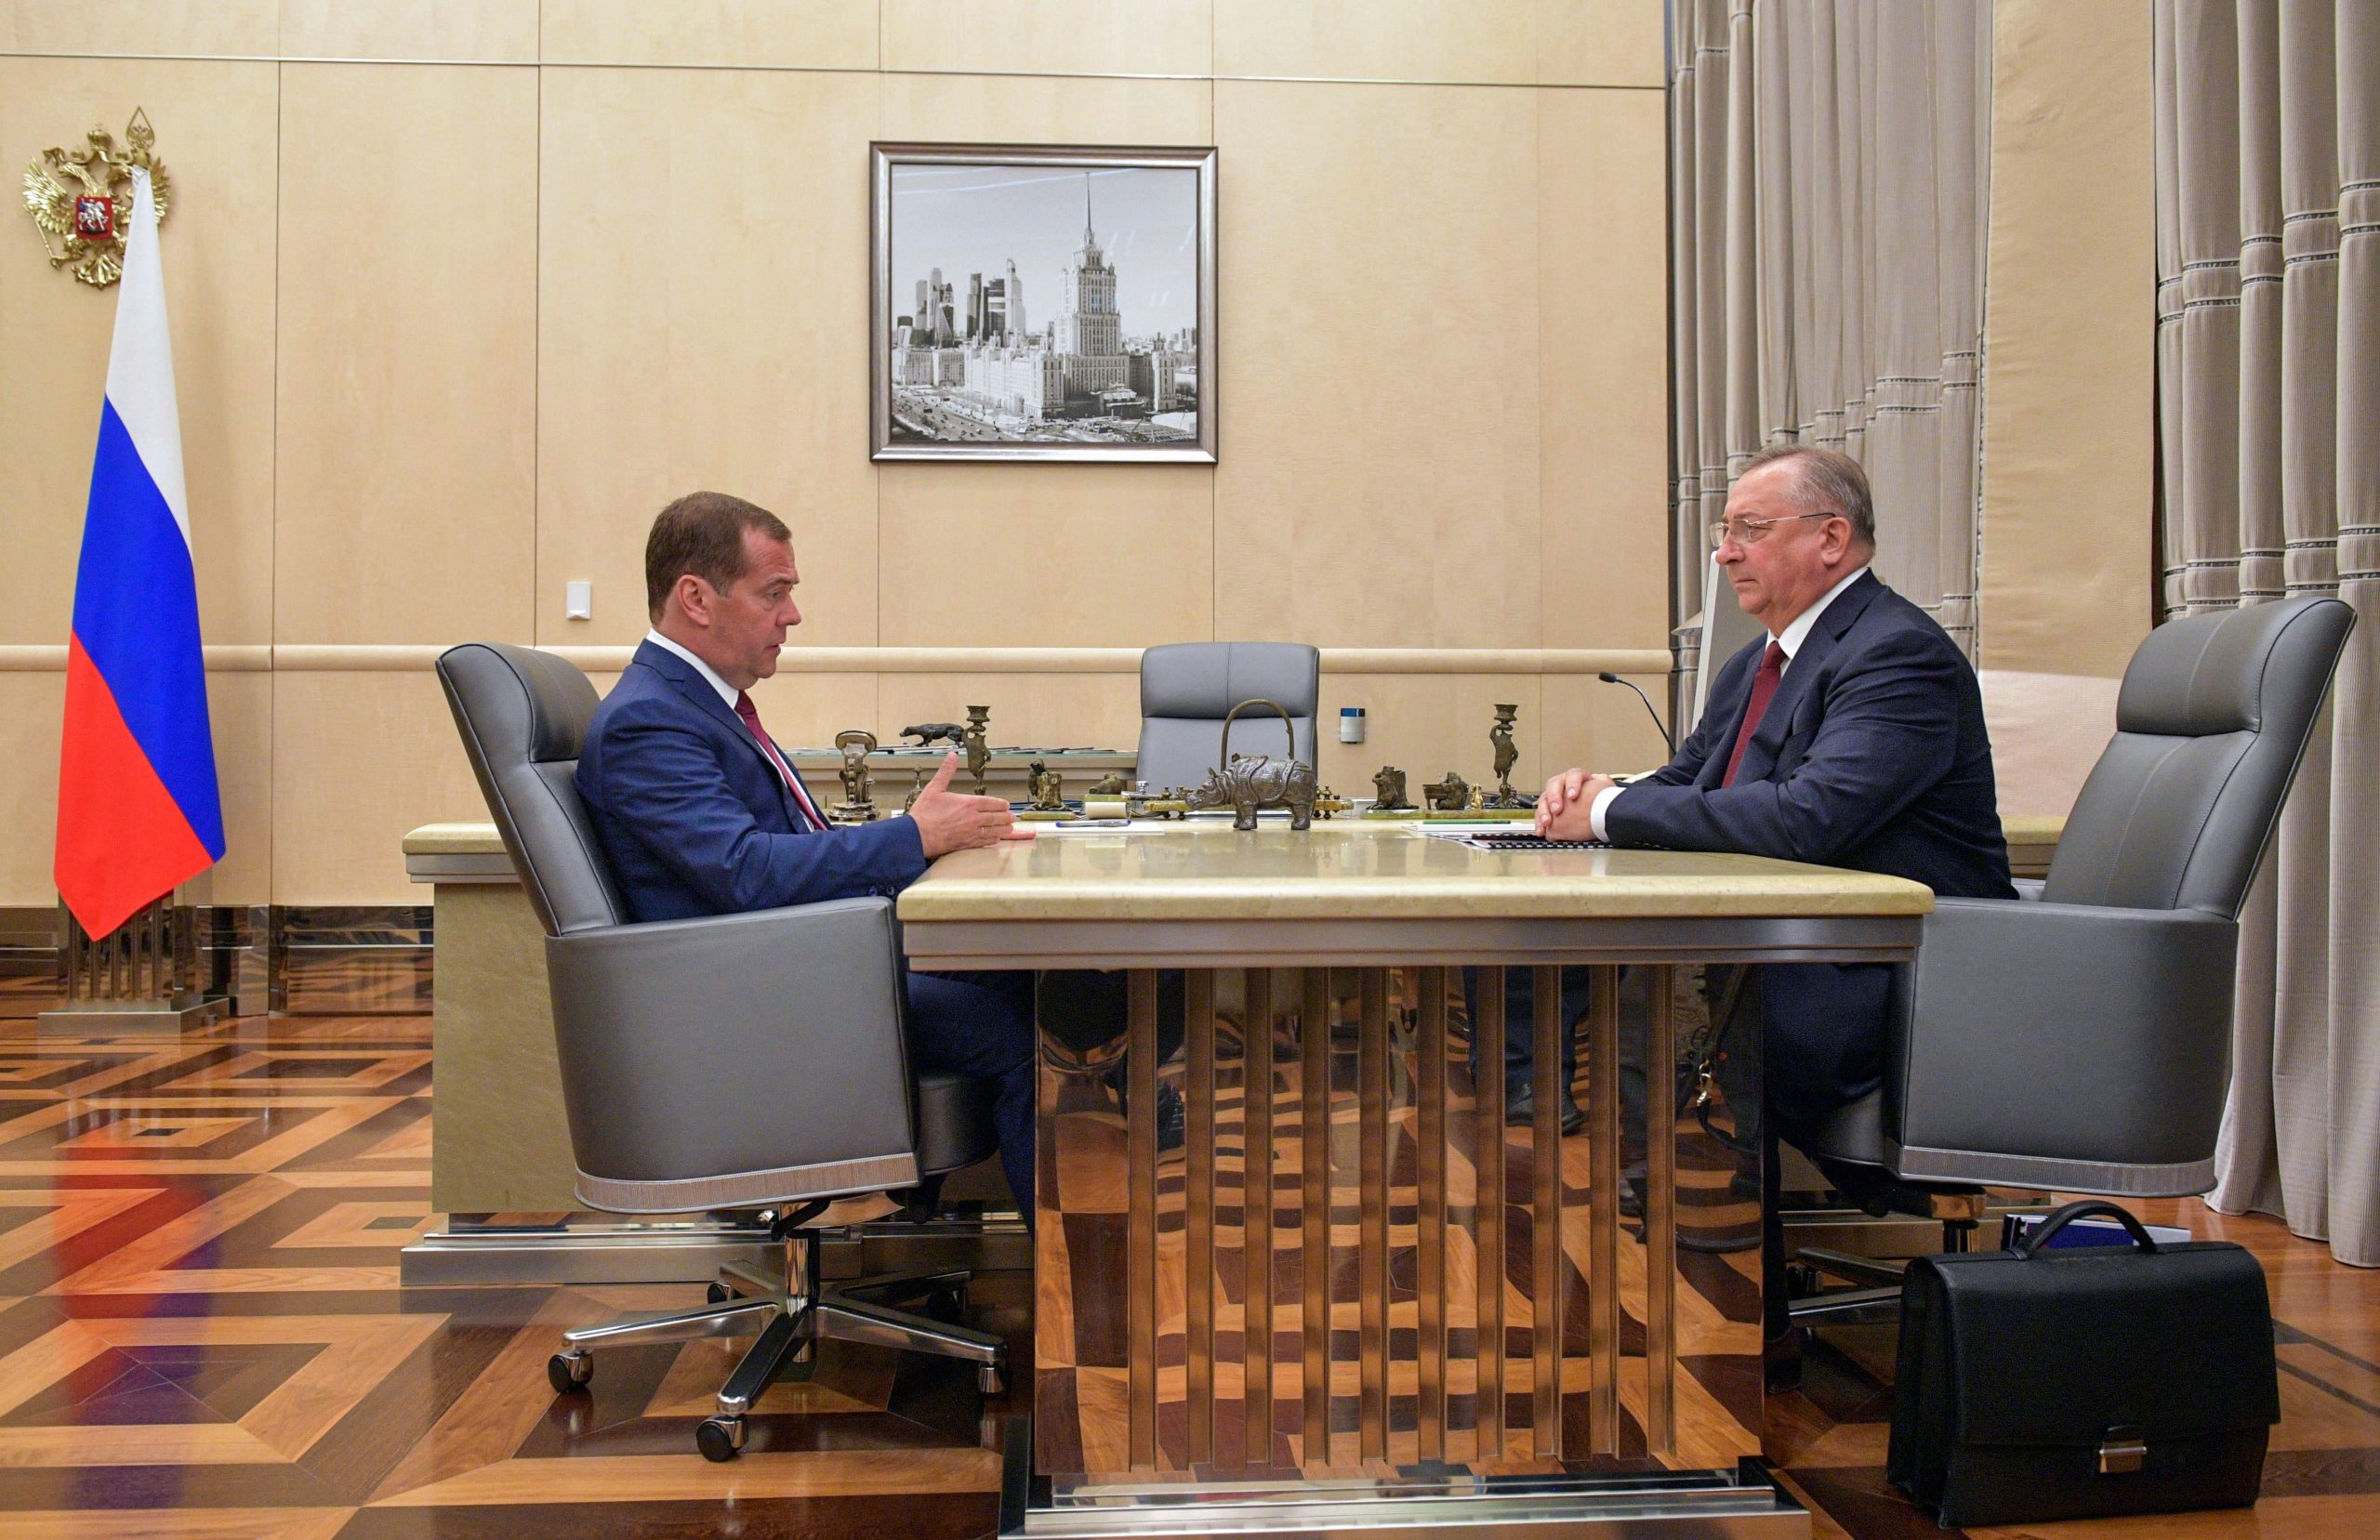 De Russische premier Dmitri Medvedev (L) en Nikolai Tokarev, voorzitter van de raad van bestuur bij Transneft, tijdens een vergadering in 2019.